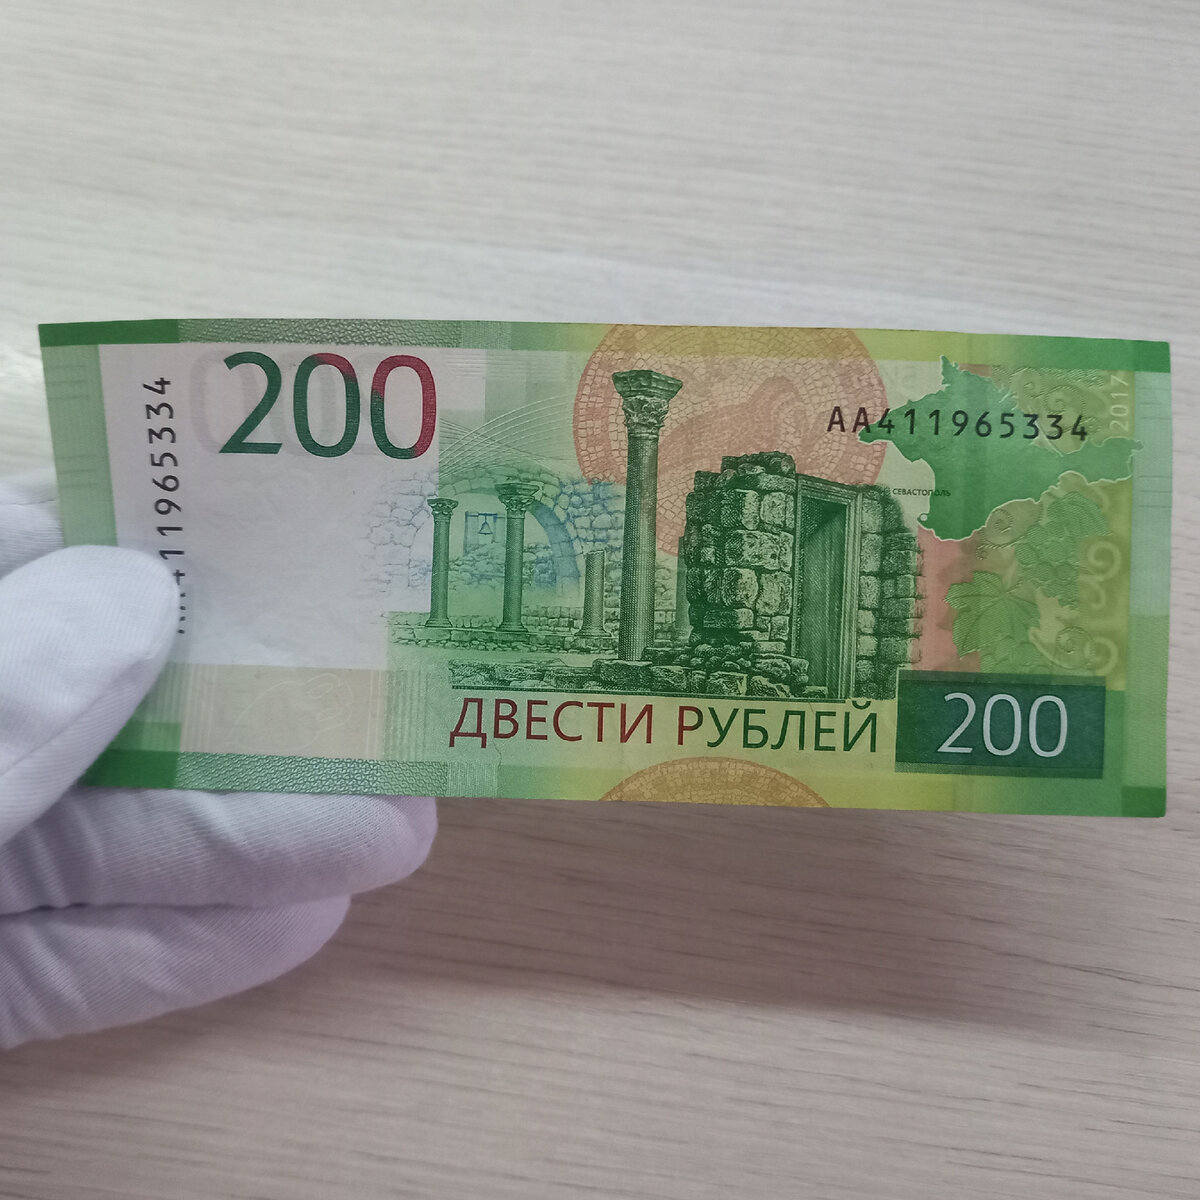 Материал 200 рублей. 200 Рублей банкнота. 200 Рублей бумажные. 200 Руб новые. Новая 200 рублевая купюра.